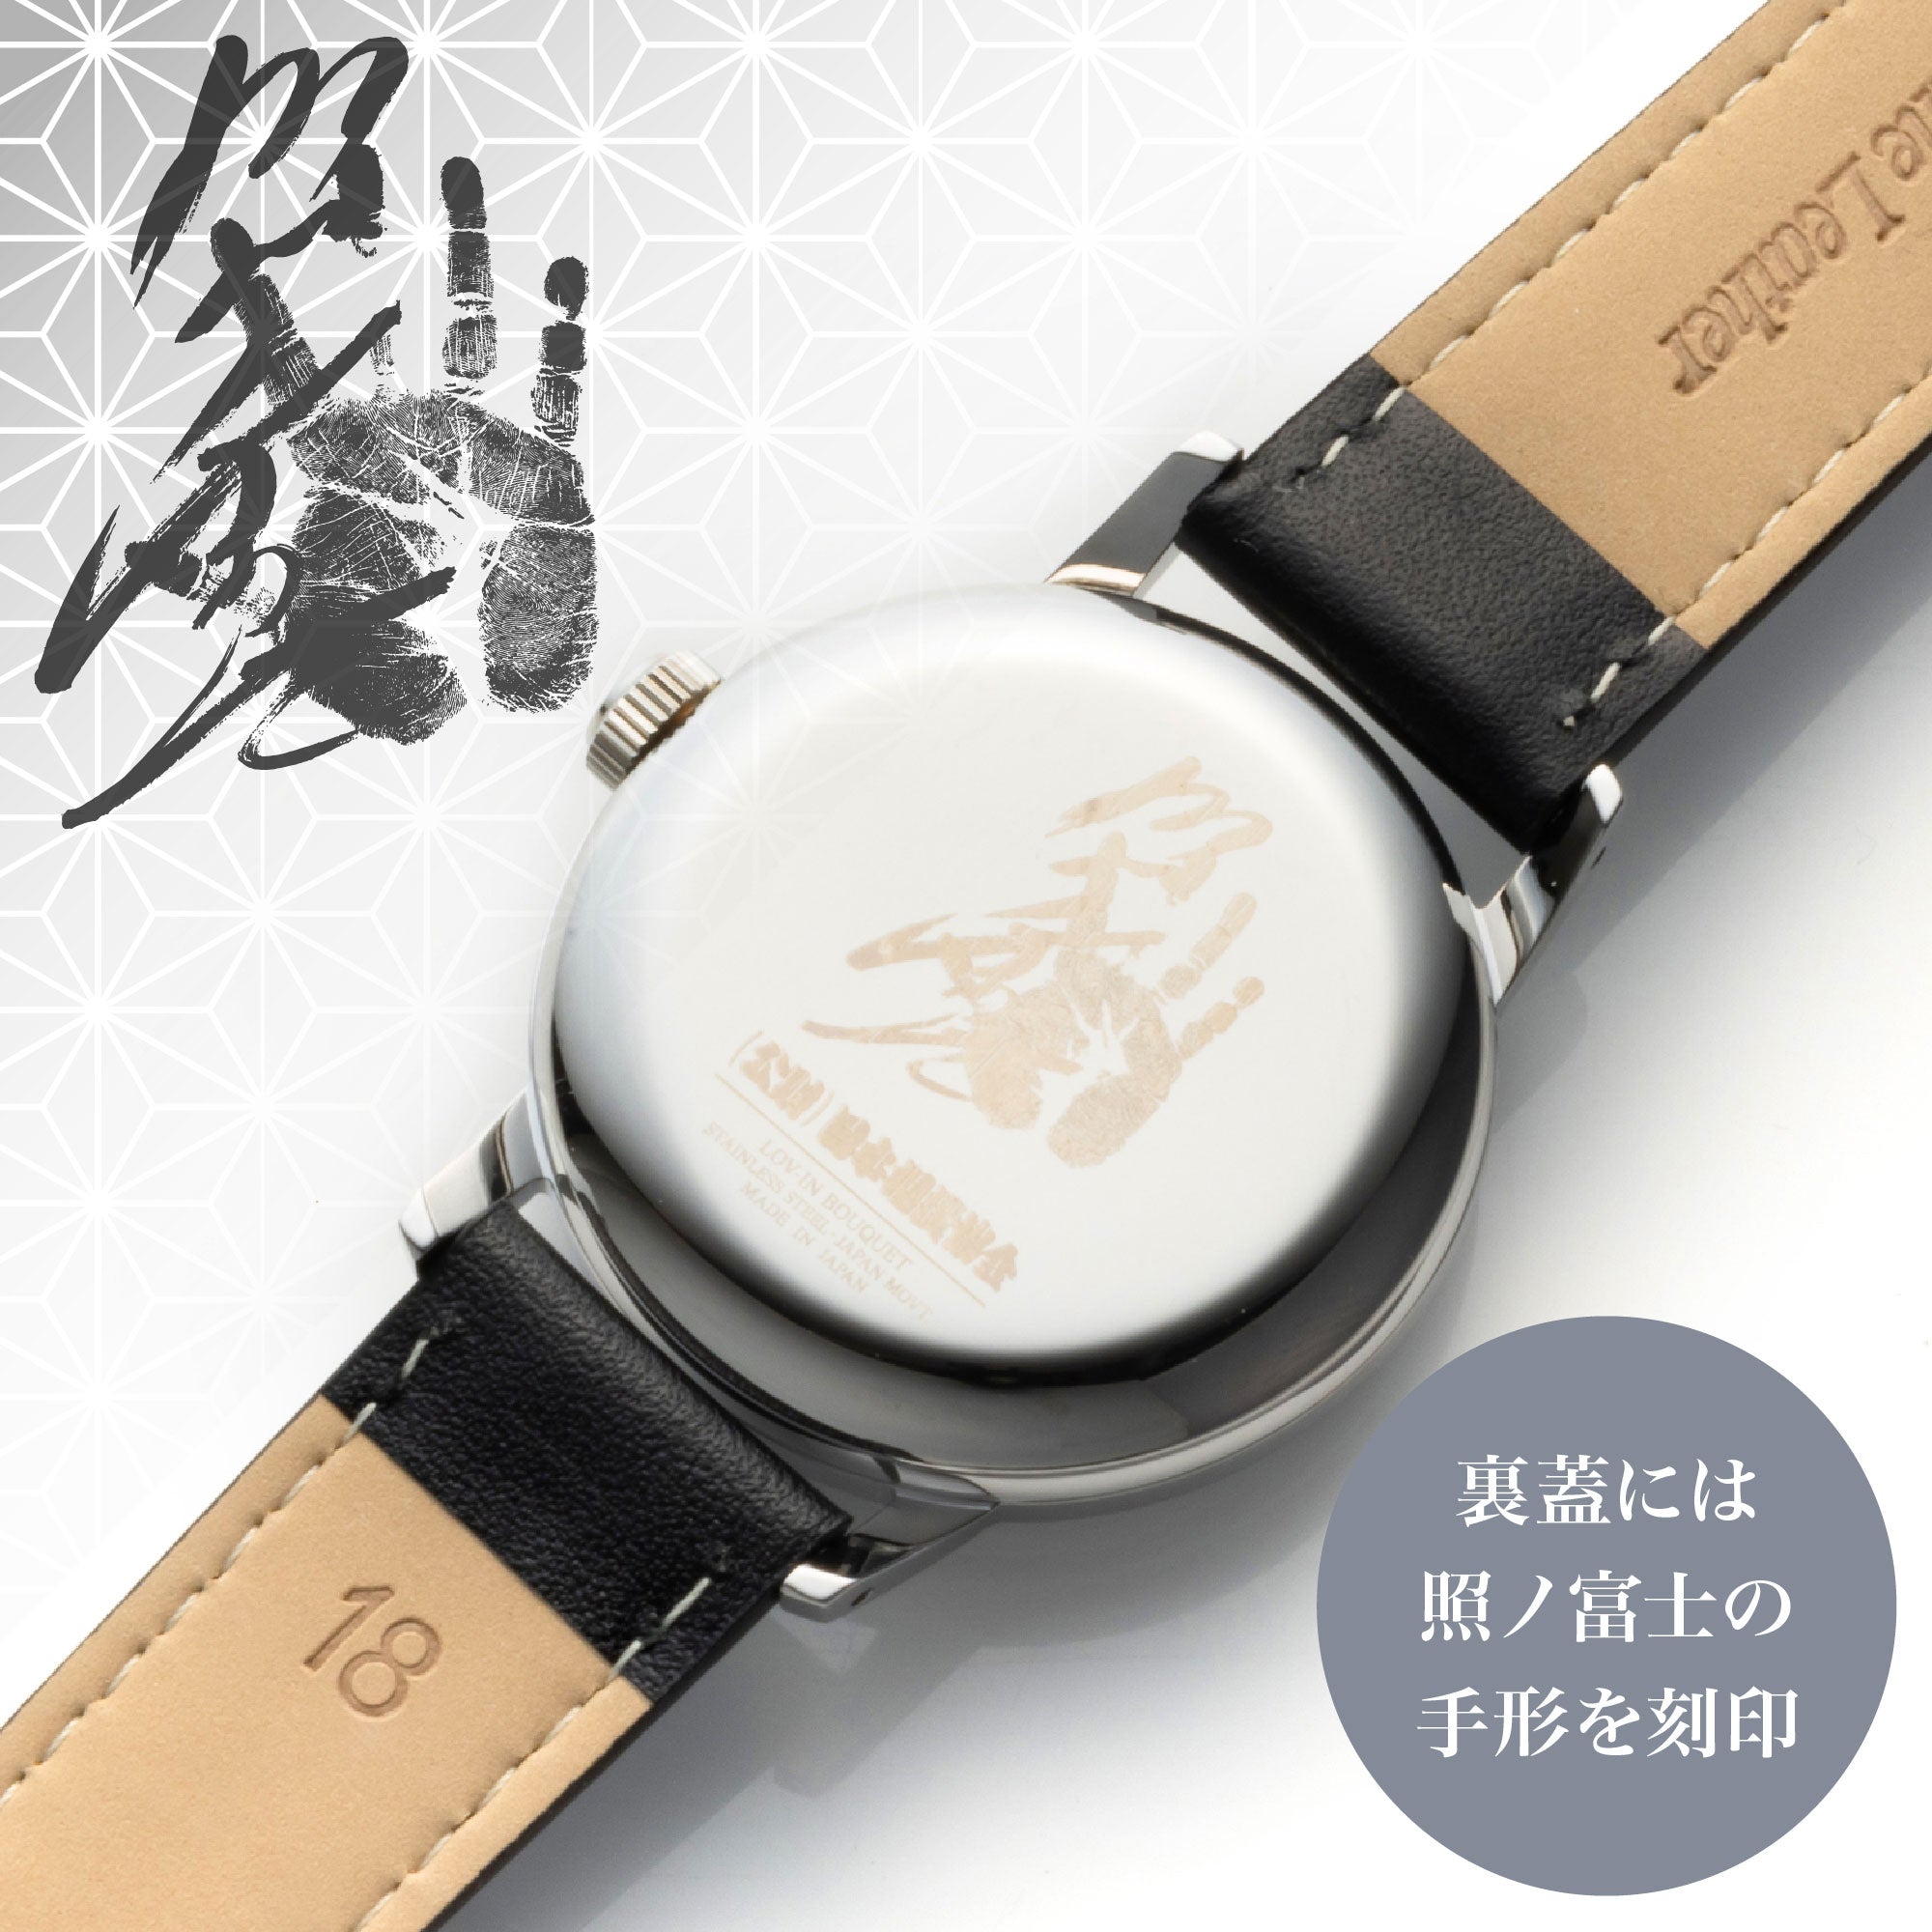 【新商品】 レザーバンド腕時計 (LVB140) 照ノ富士